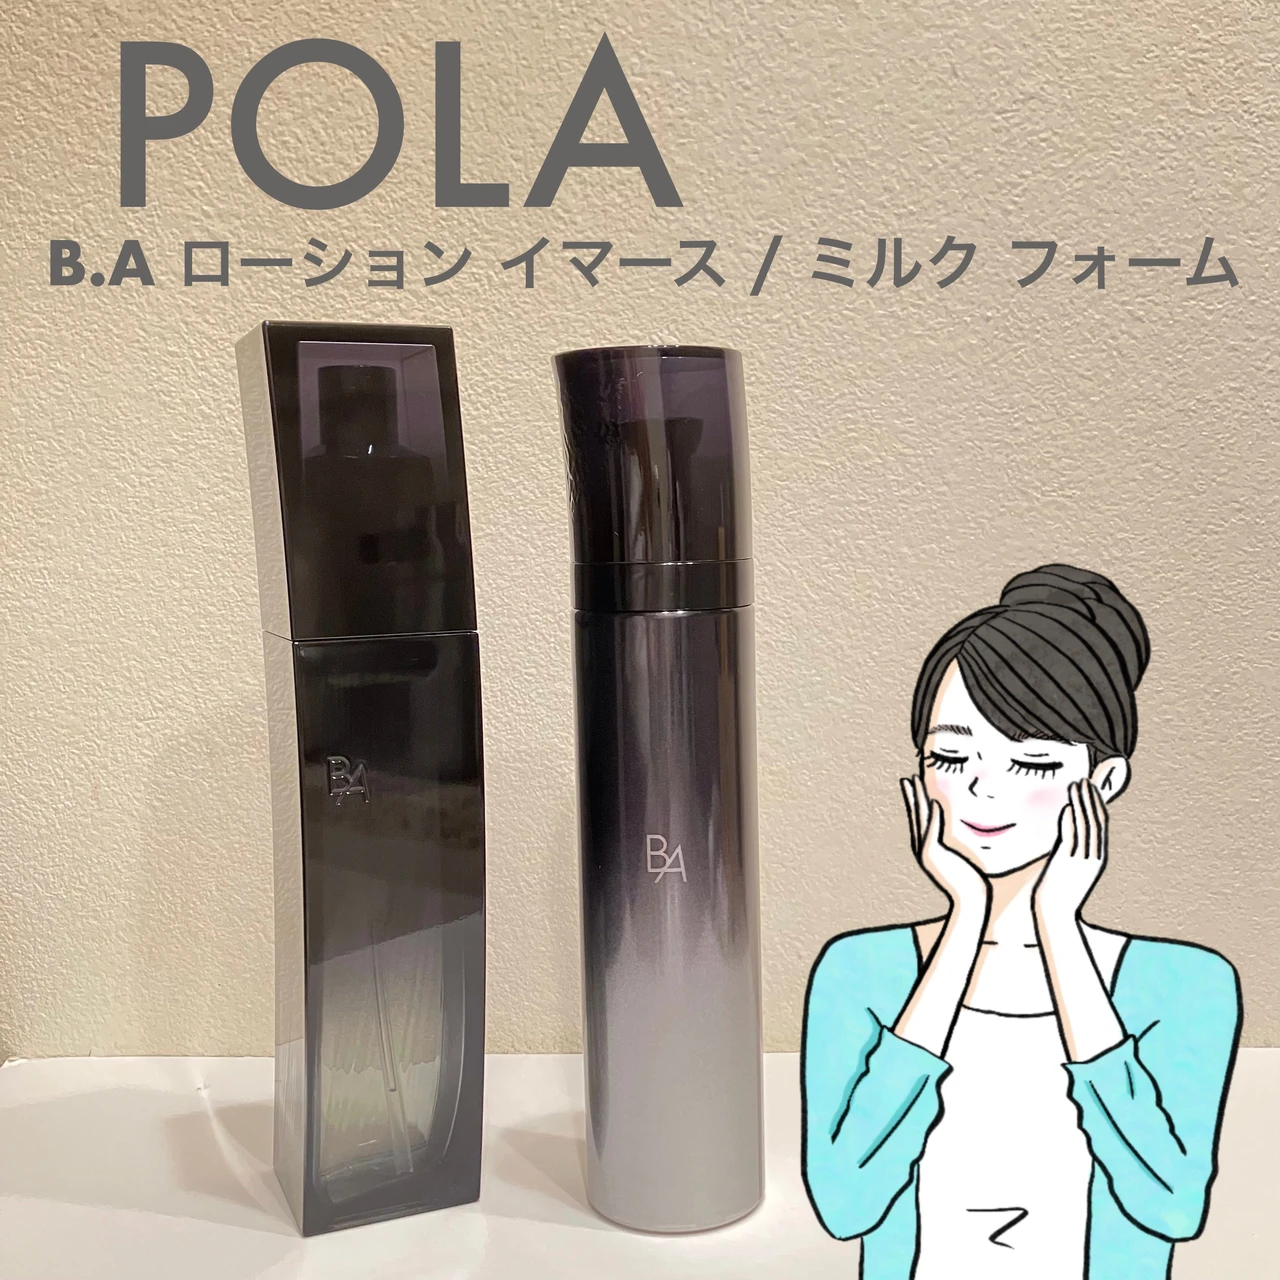 ポーラ(POLA)最高峰ブランド「B.A(ビーエー)」 - 美容液